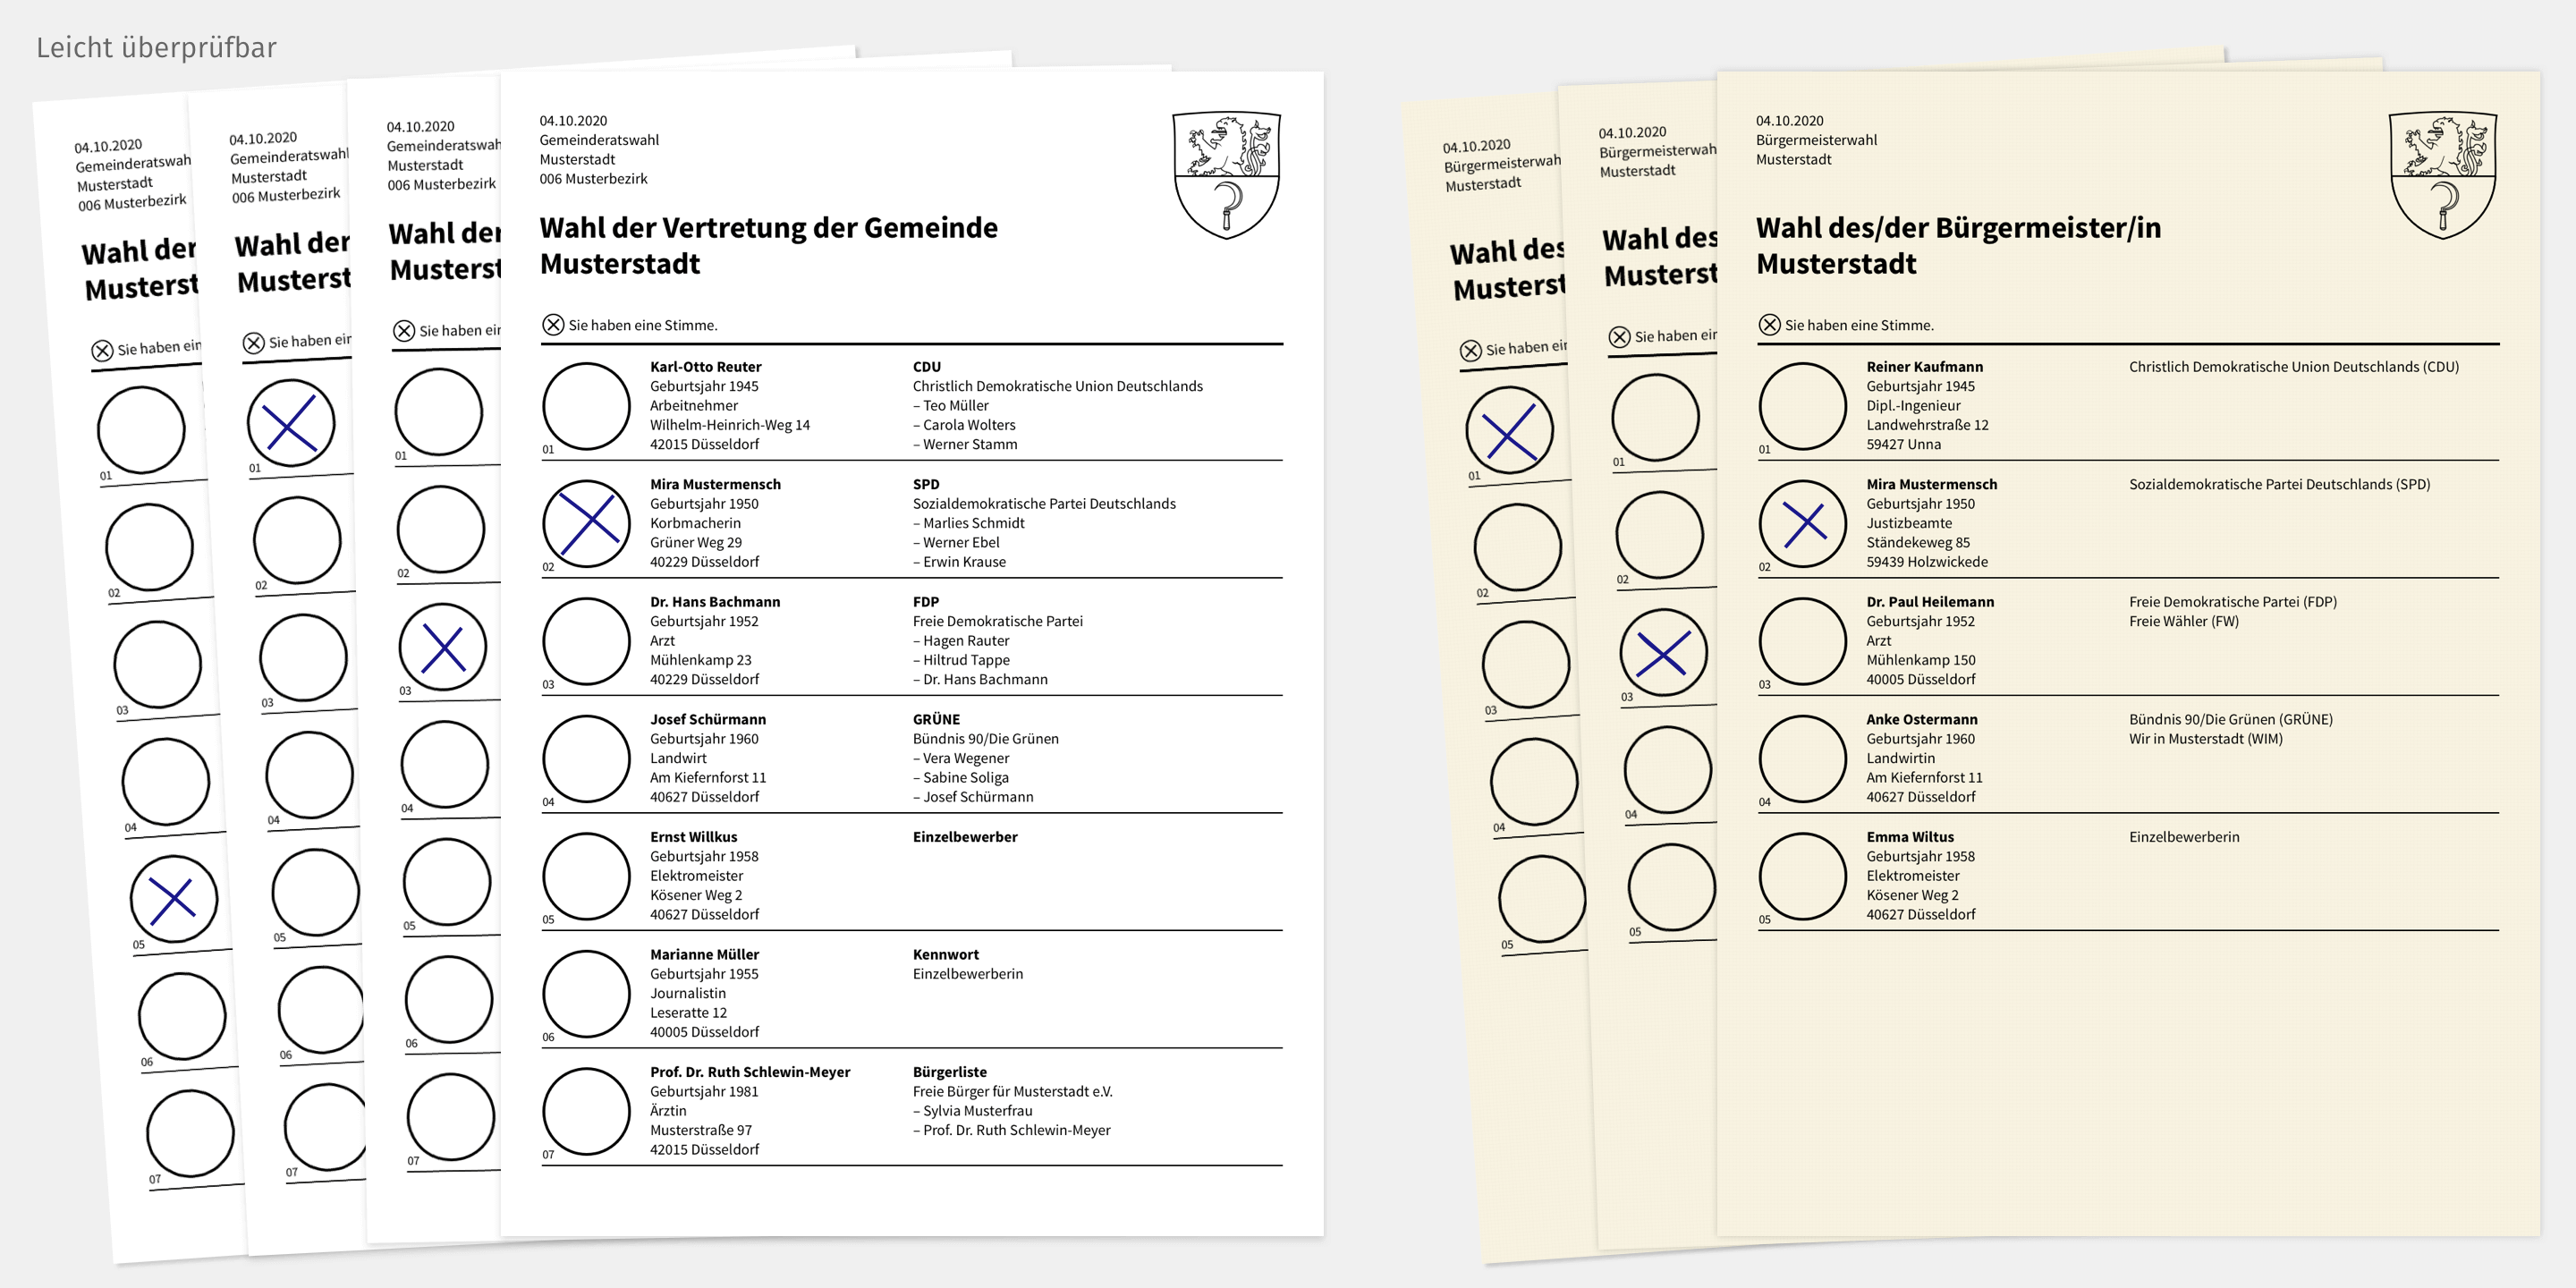 Das Bild zeigt einen neuen Entwurf für einen besseren Stimmzettel. Abgebildet sind mehre aufeinander liegende Zettel, an denen man schnell überprüfen kann, wie gewählt wurde.